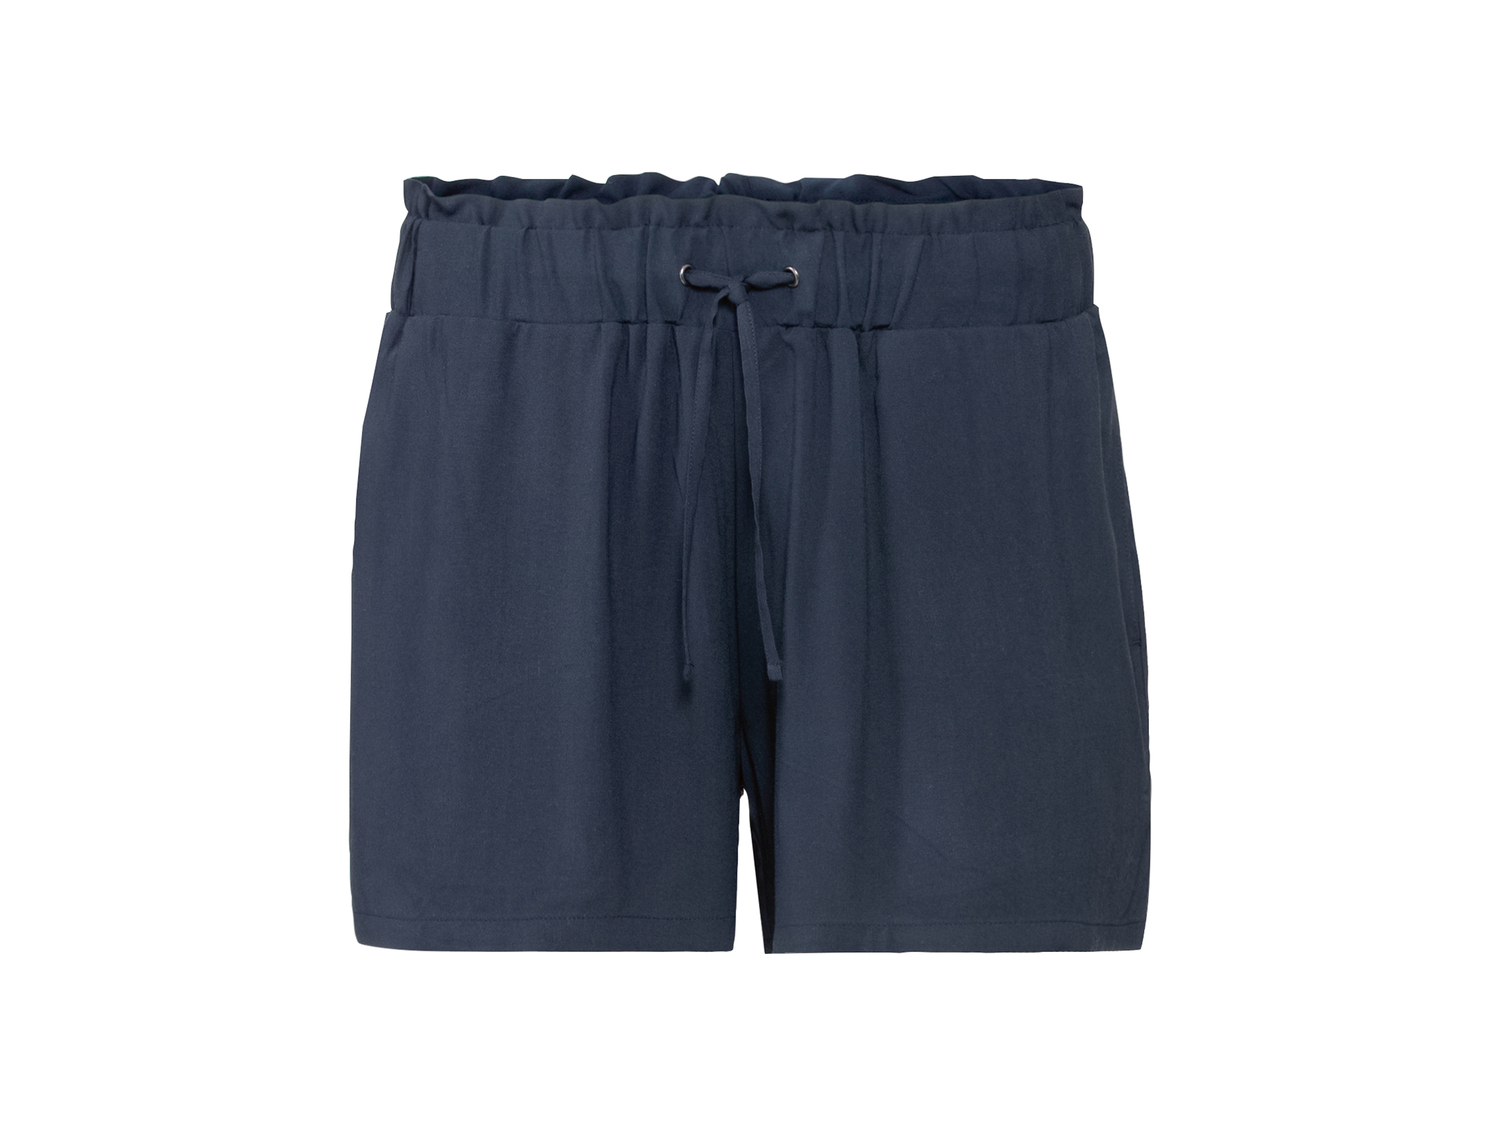 Shorts da donna Esmara, prezzo 4.99 &#8364; 
Misure: 38-48 
- 100% viscosa
Prodotto ...